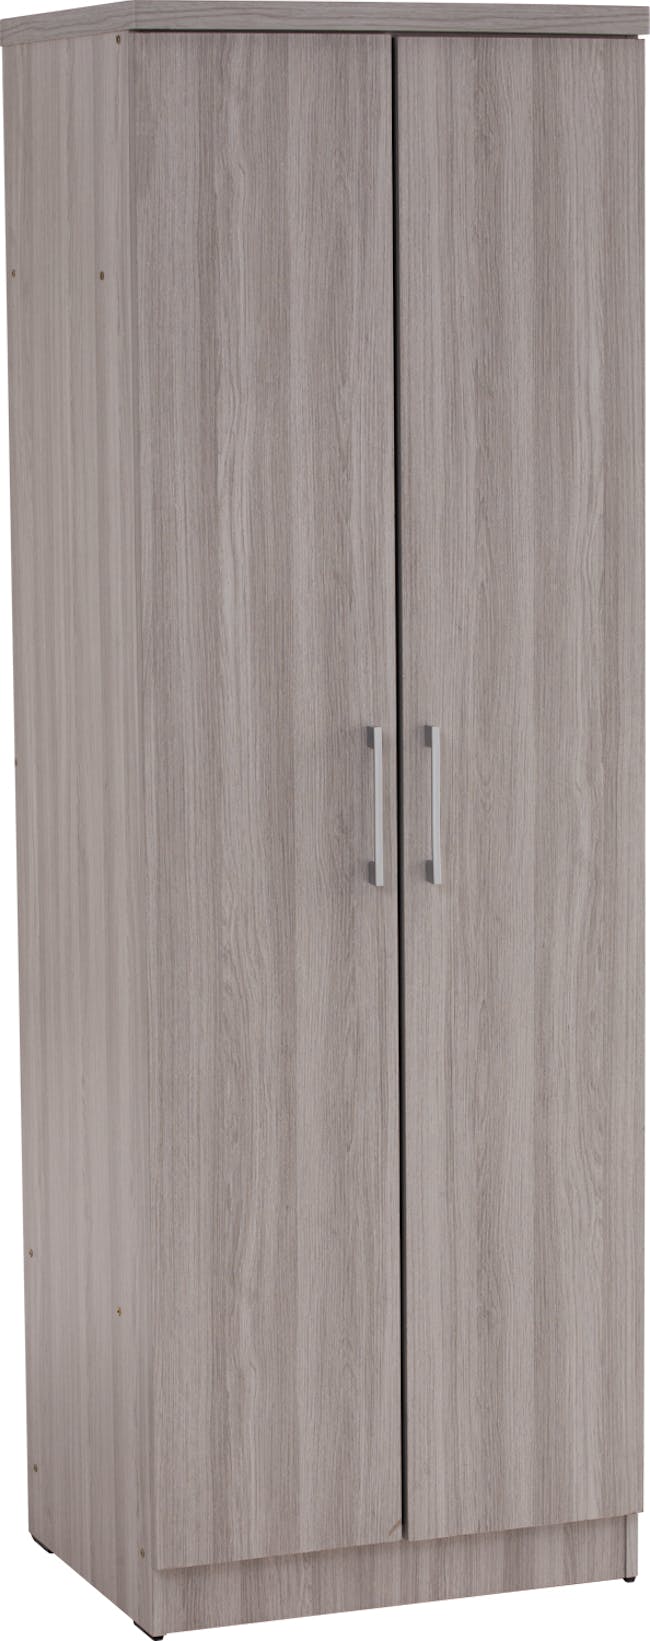 Dublin 2 Door Wardrobe with Shelves - Grey - 4